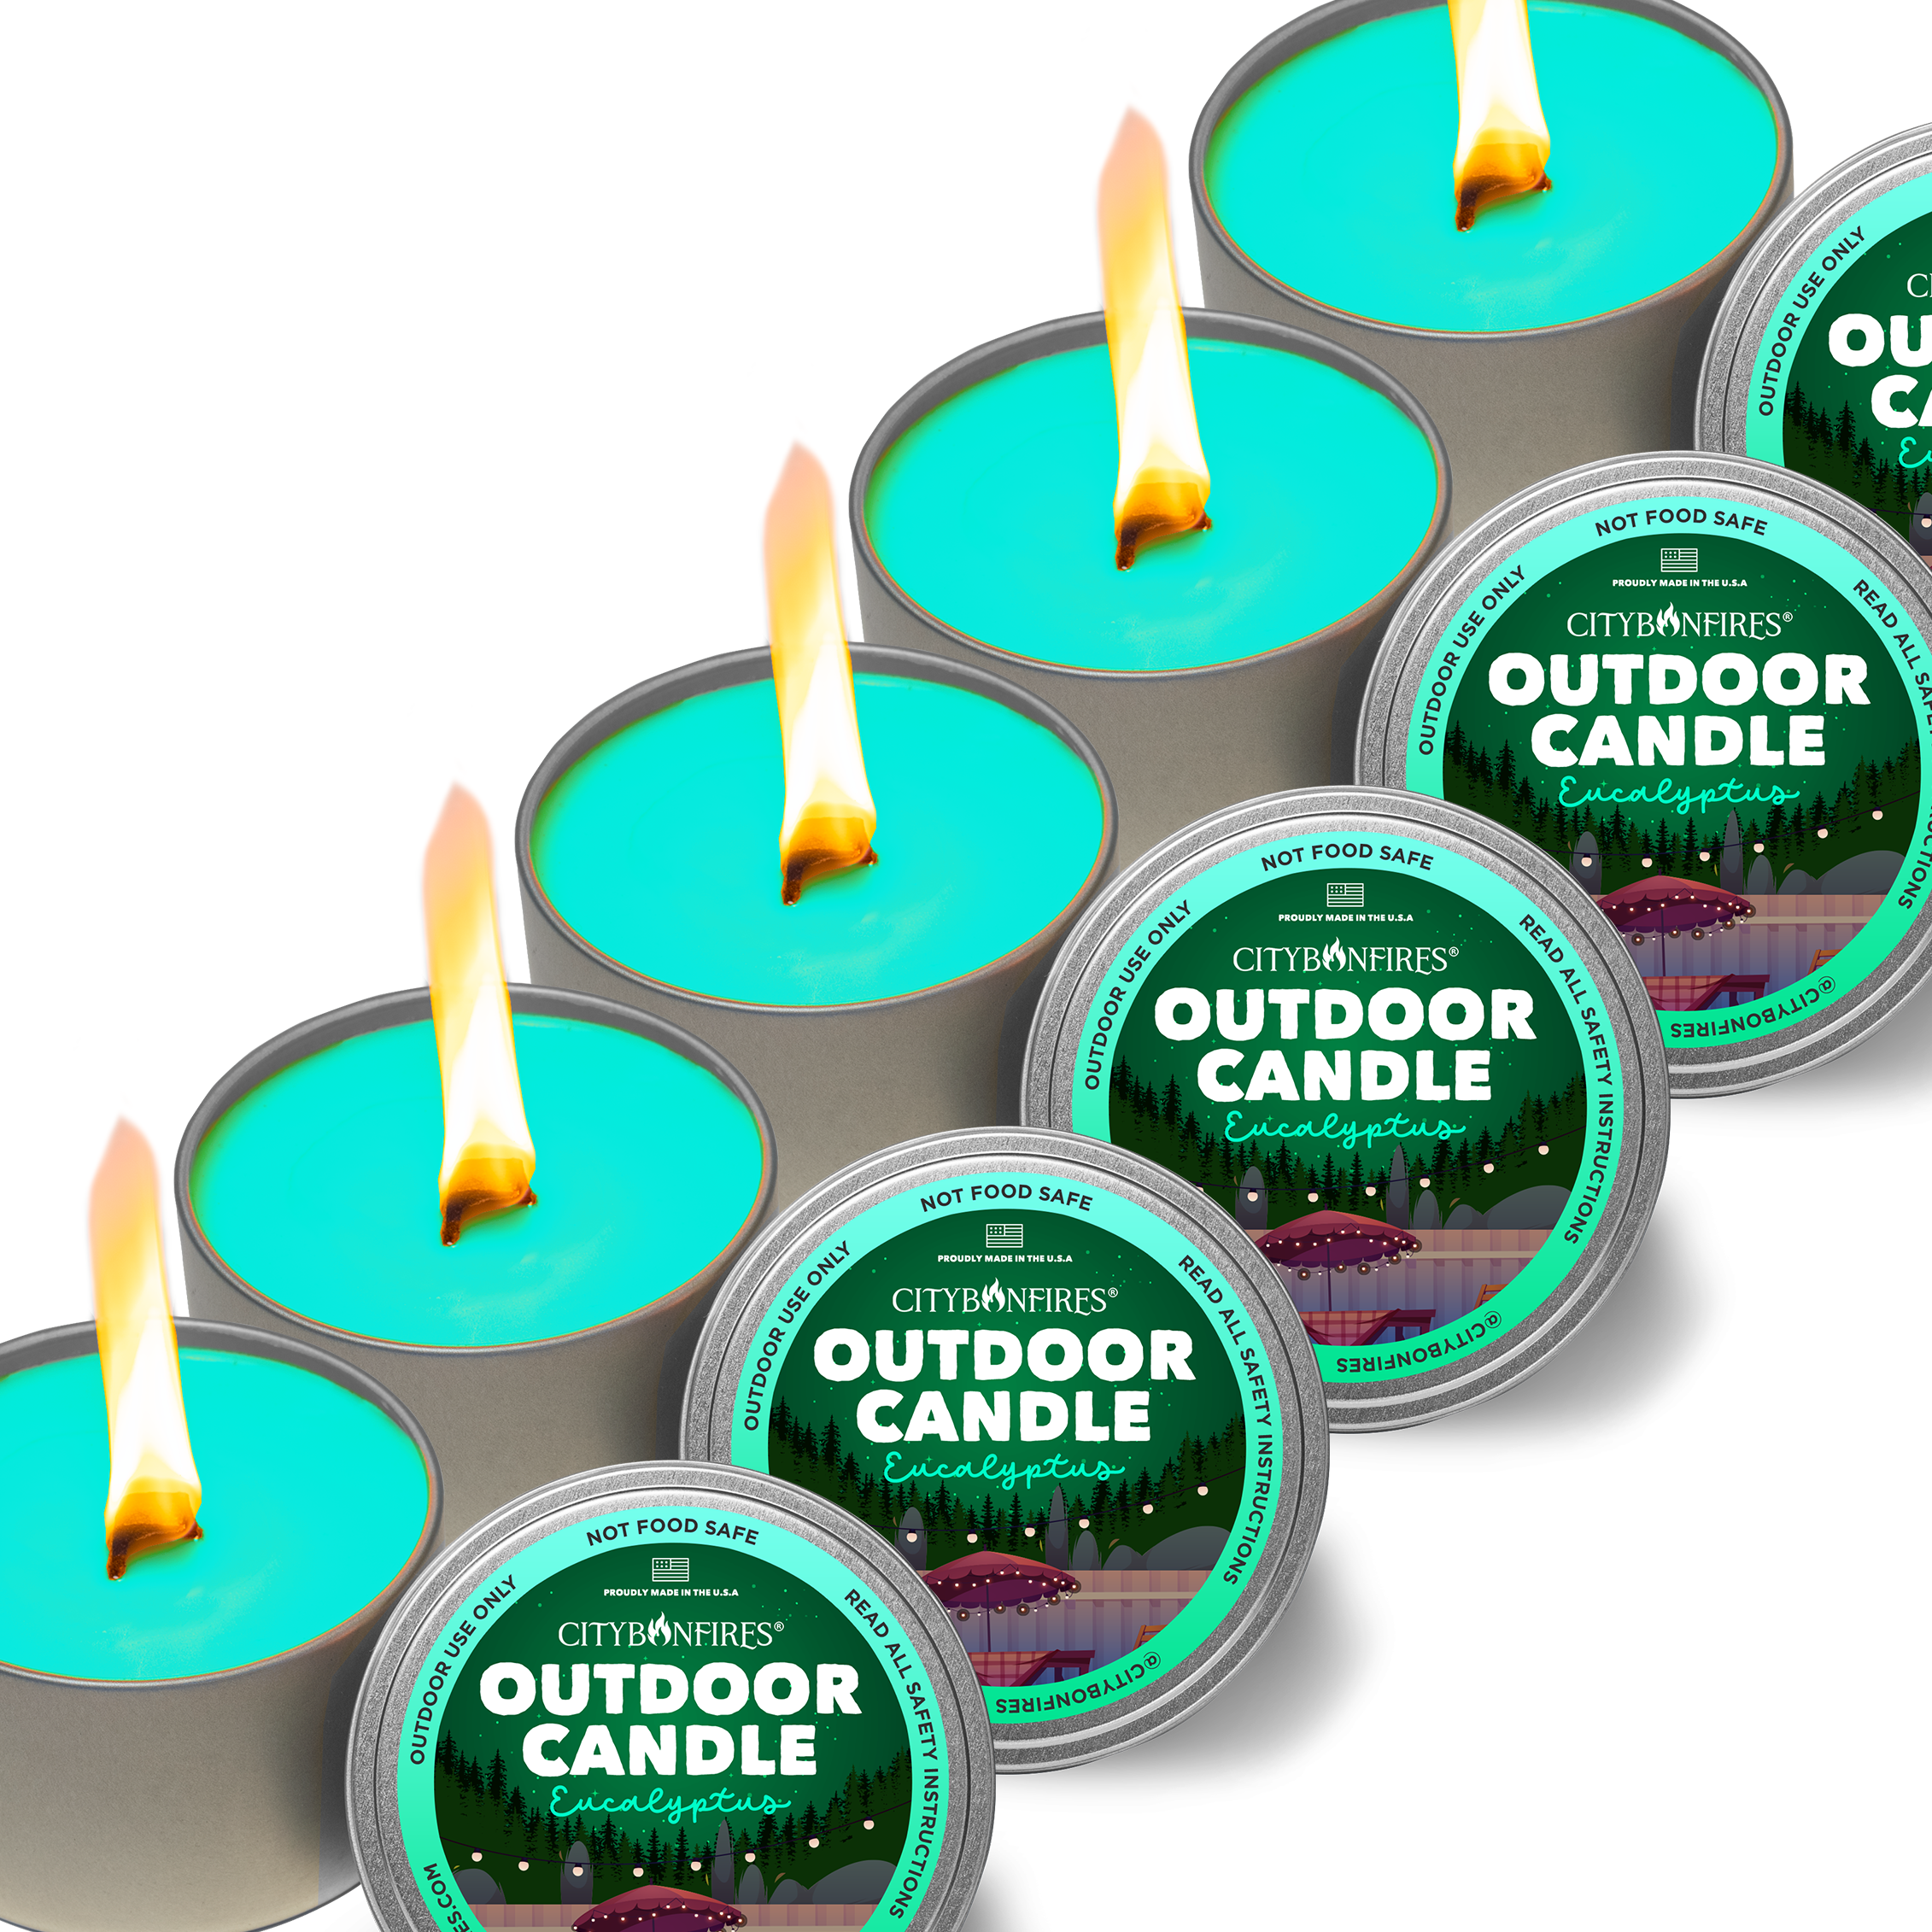 The Outdoor Candle - Eucalyptus